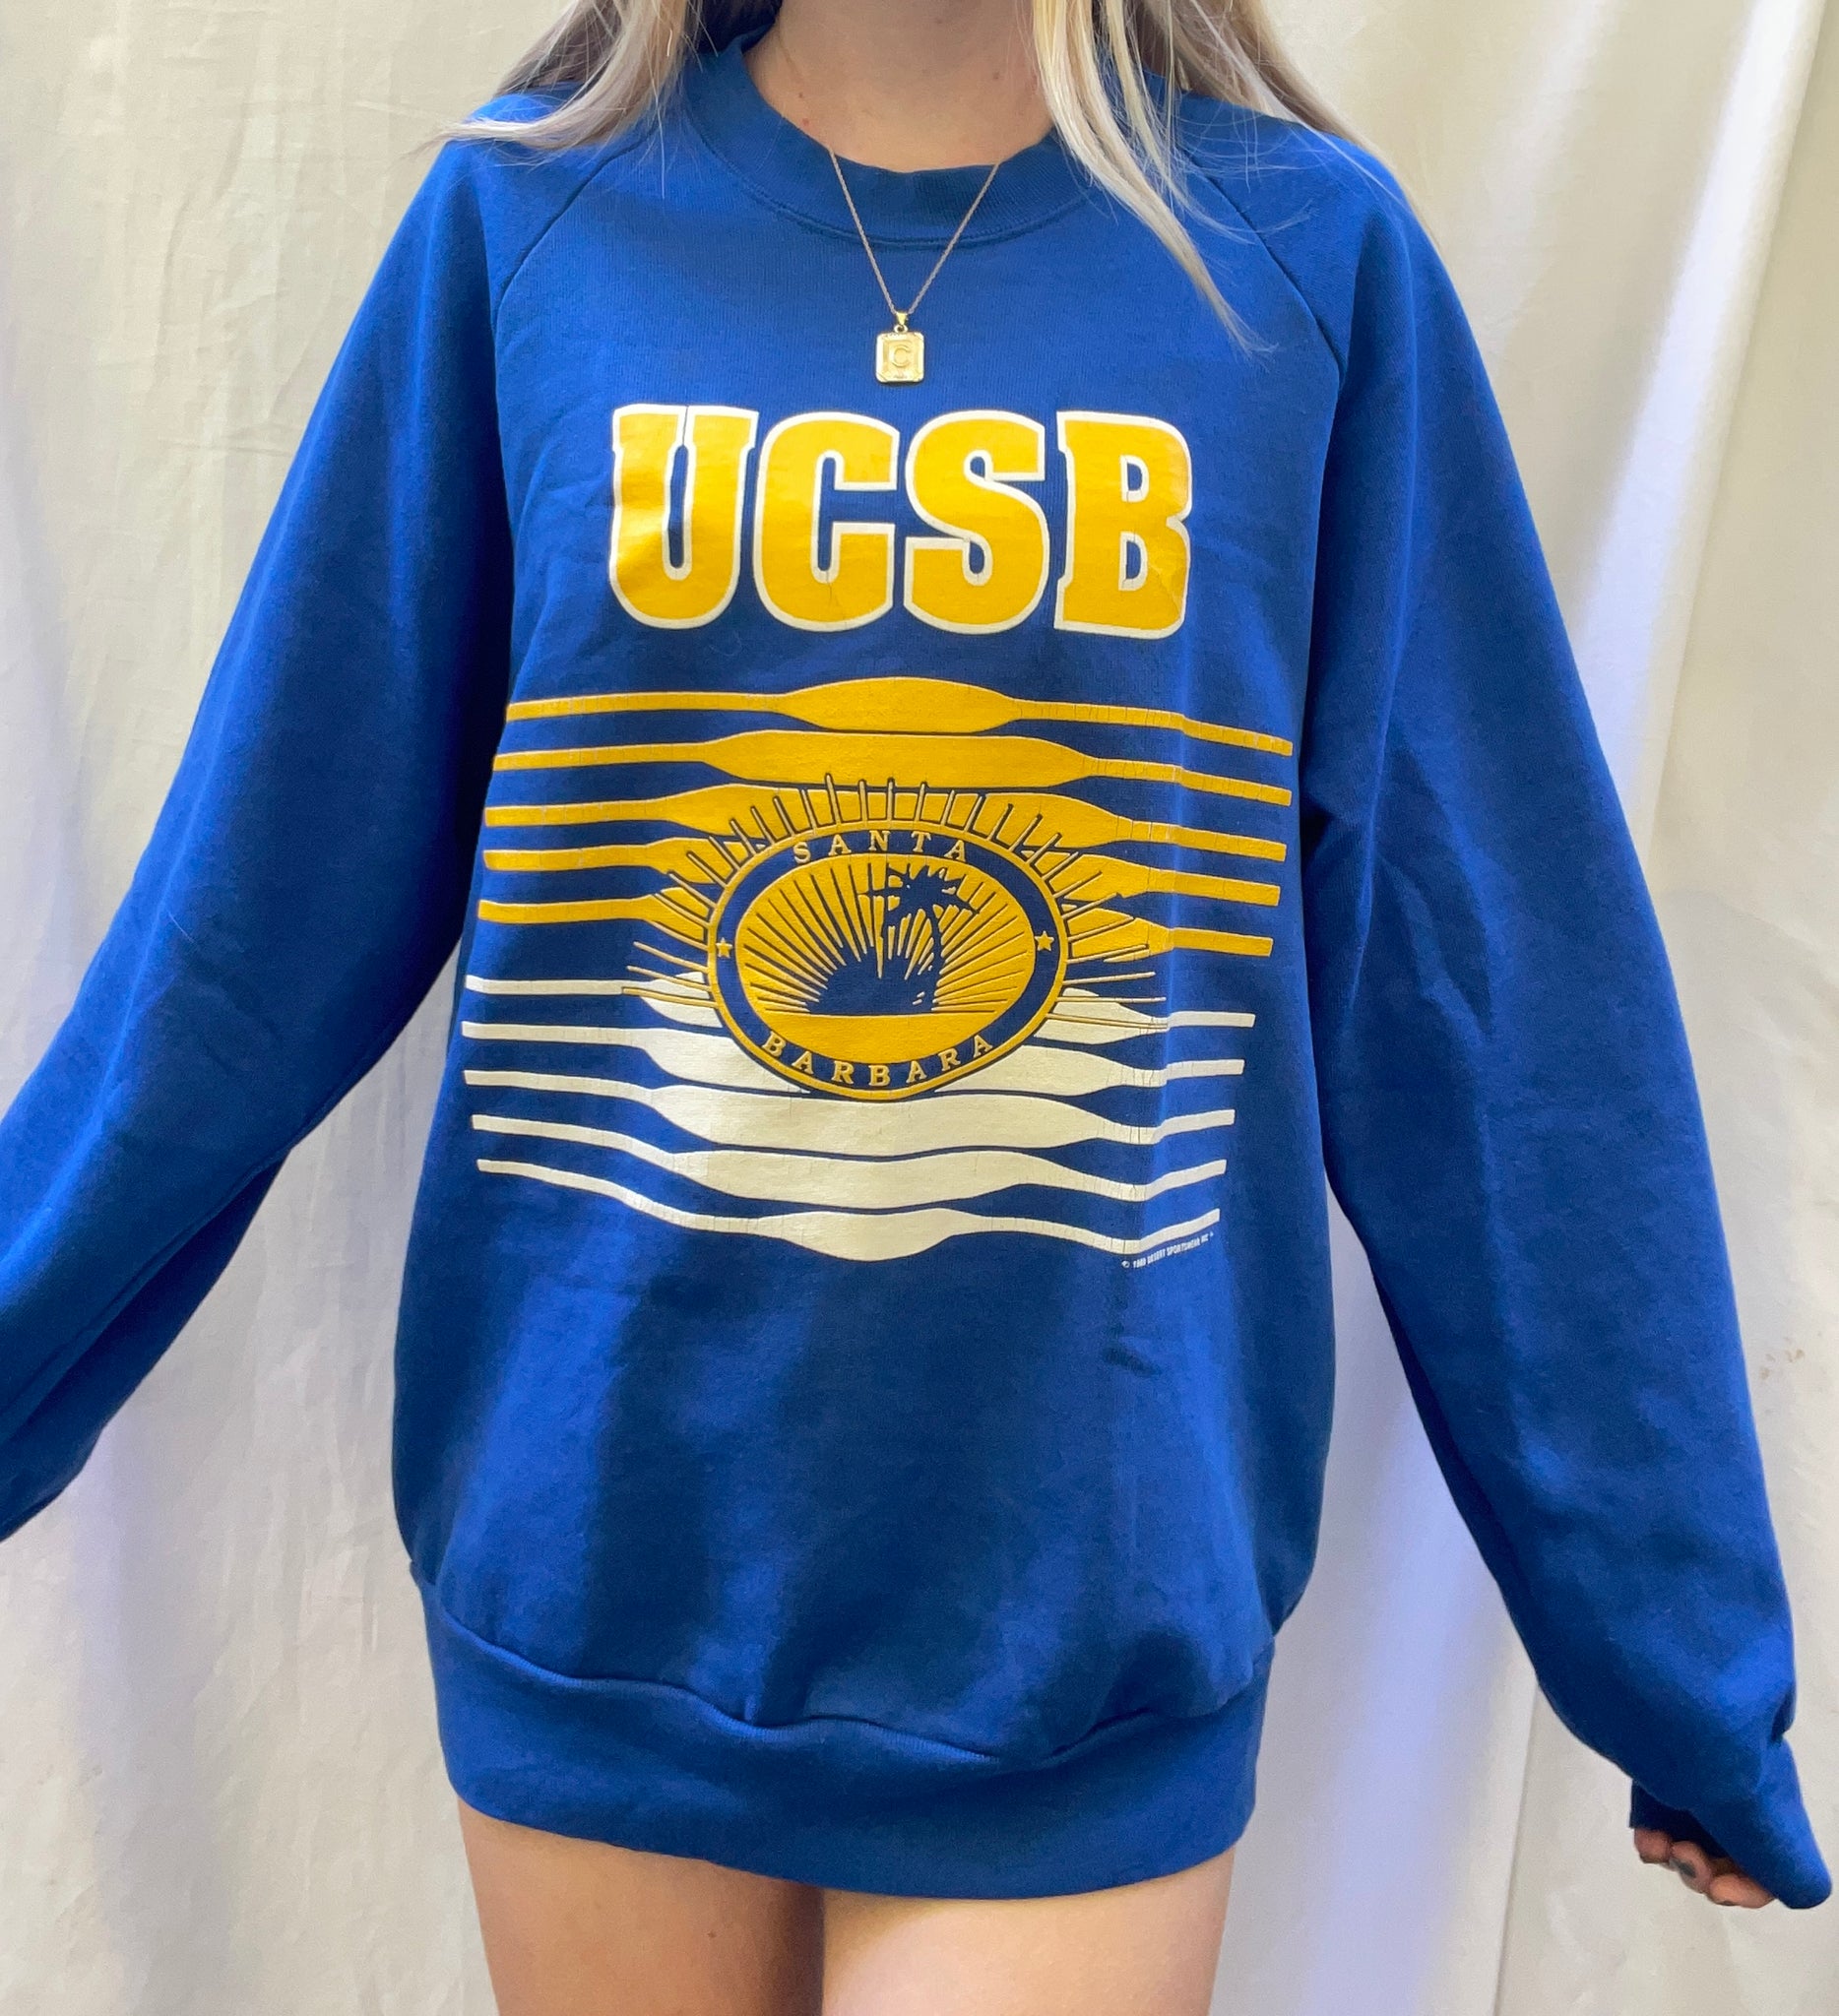 Santa Barbara Vintage Crew Neck Sweatshirt